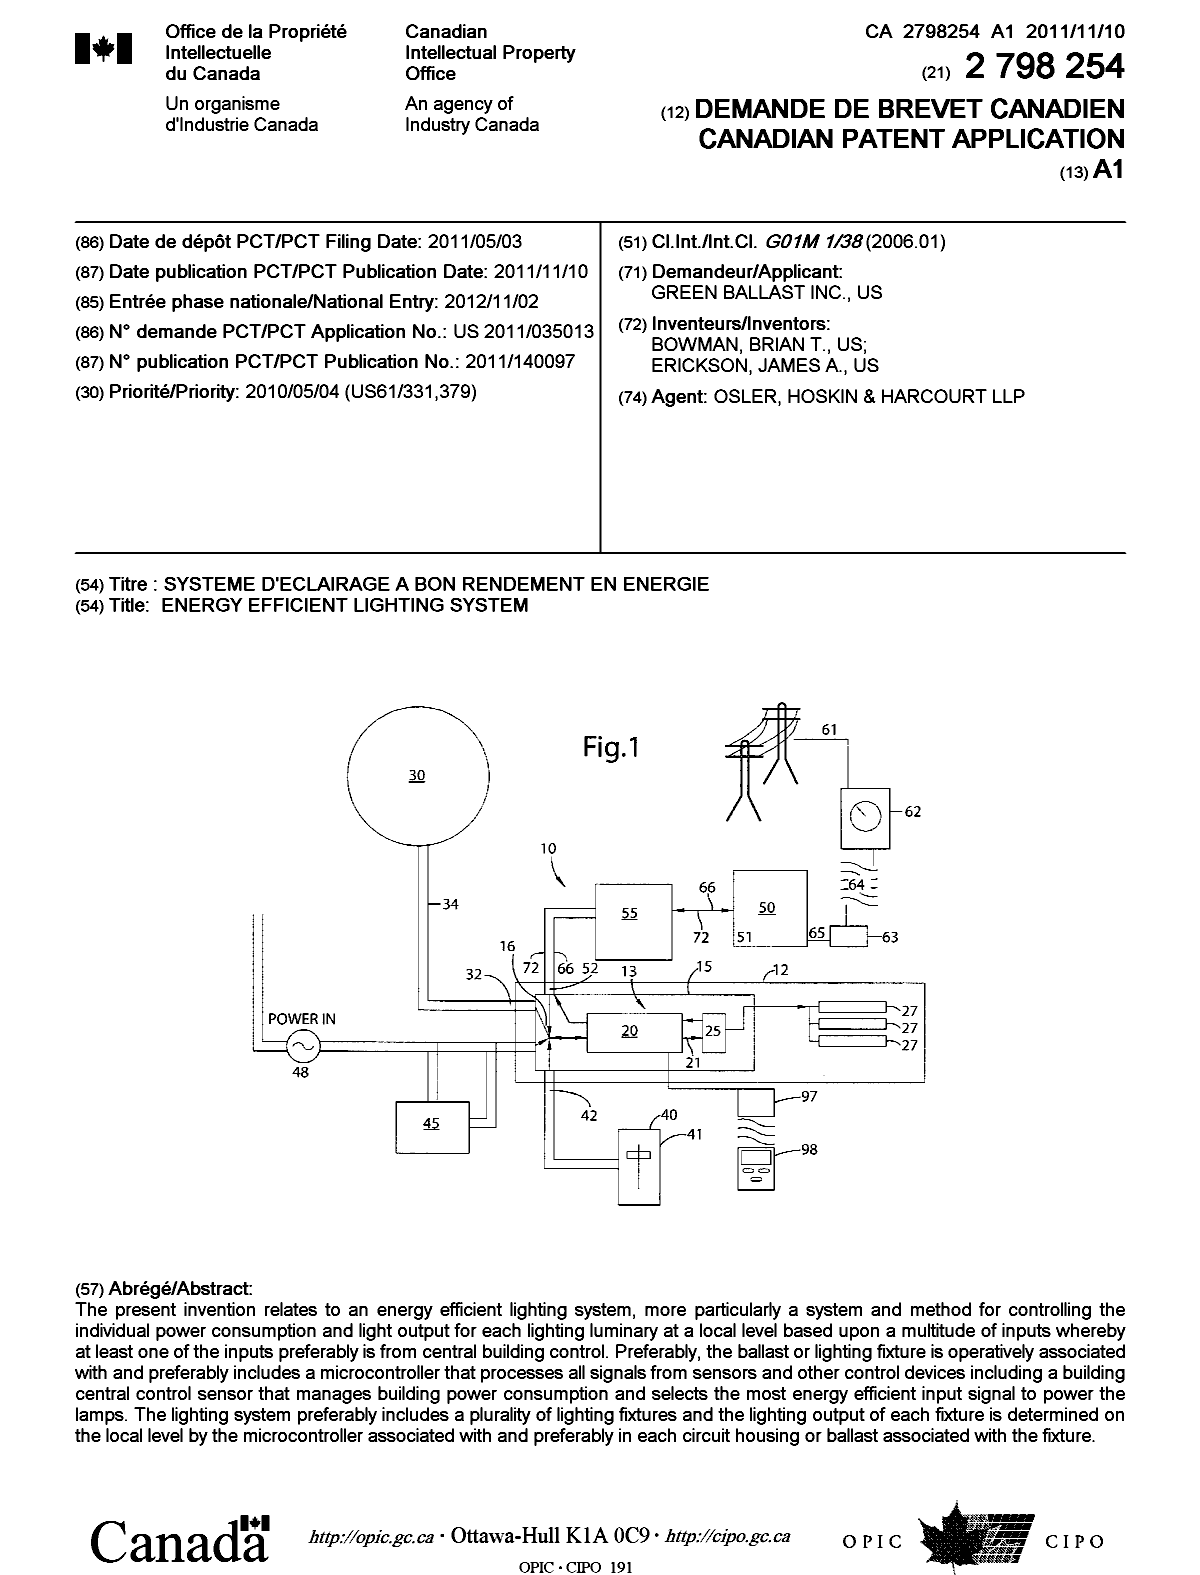 Document de brevet canadien 2798254. Page couverture 20130107. Image 1 de 1